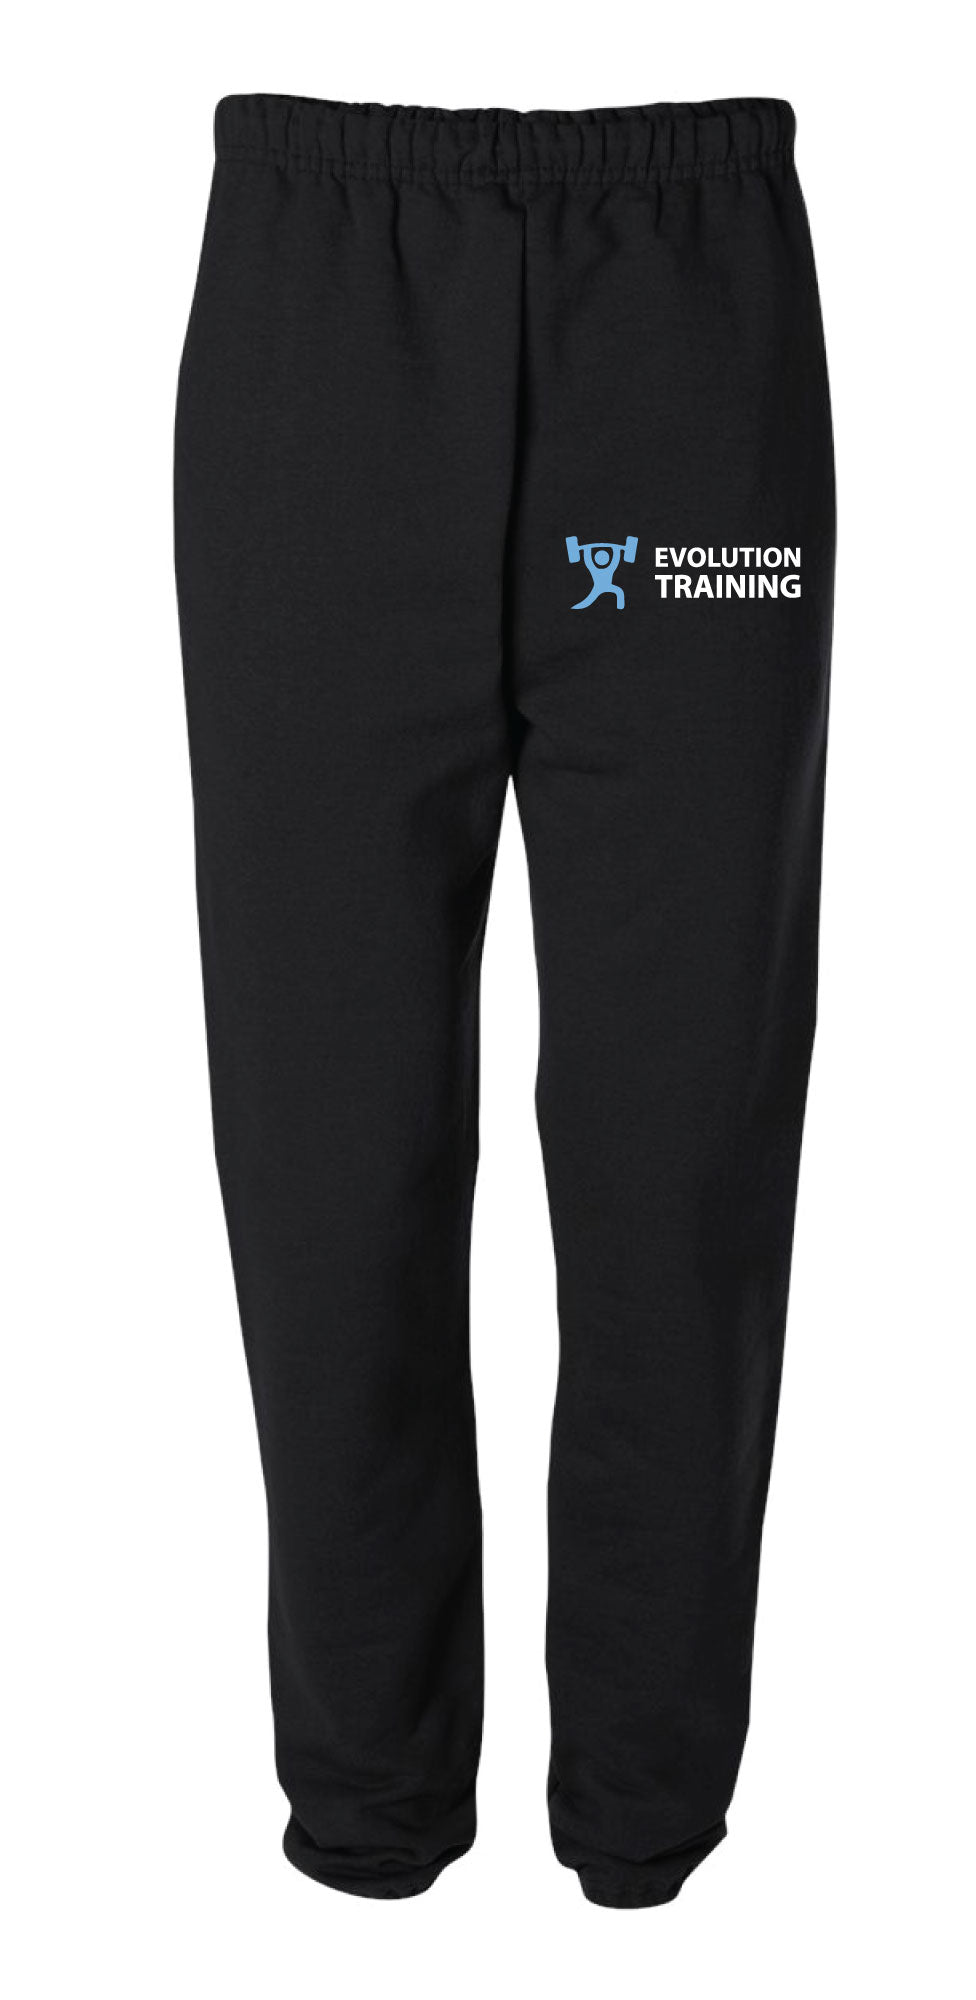 Evolution Cotton Sweatpants - Black - 5KounT2018